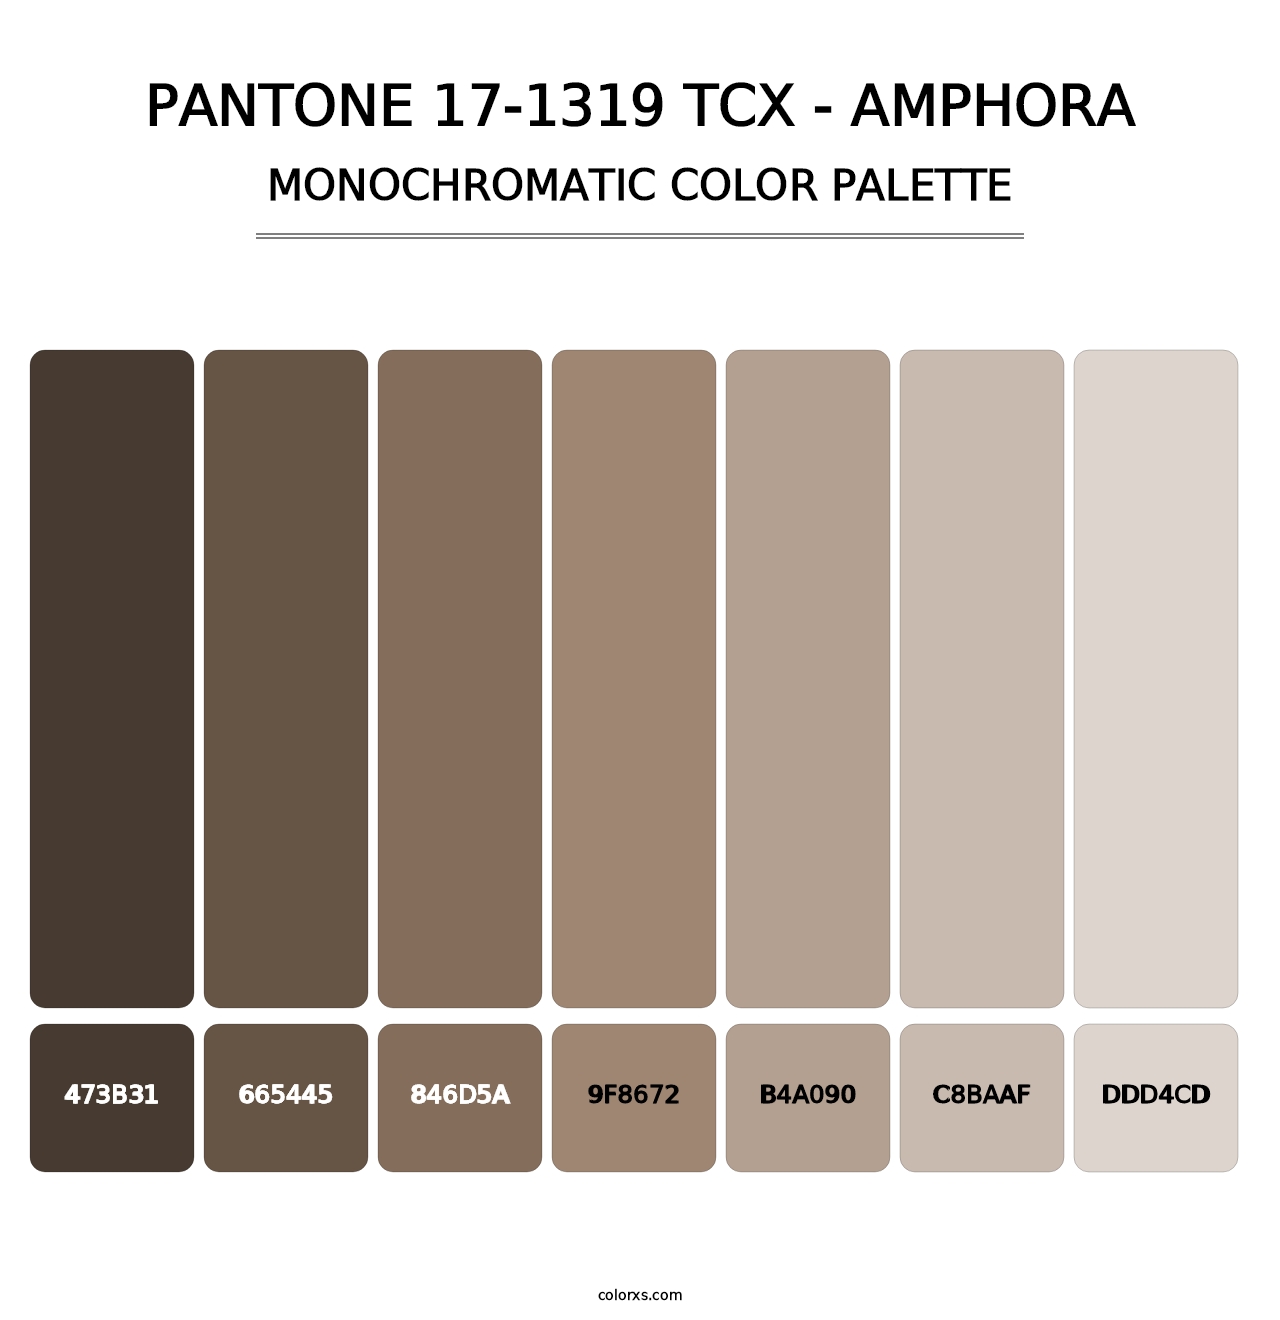 PANTONE 17-1319 TCX - Amphora - Monochromatic Color Palette